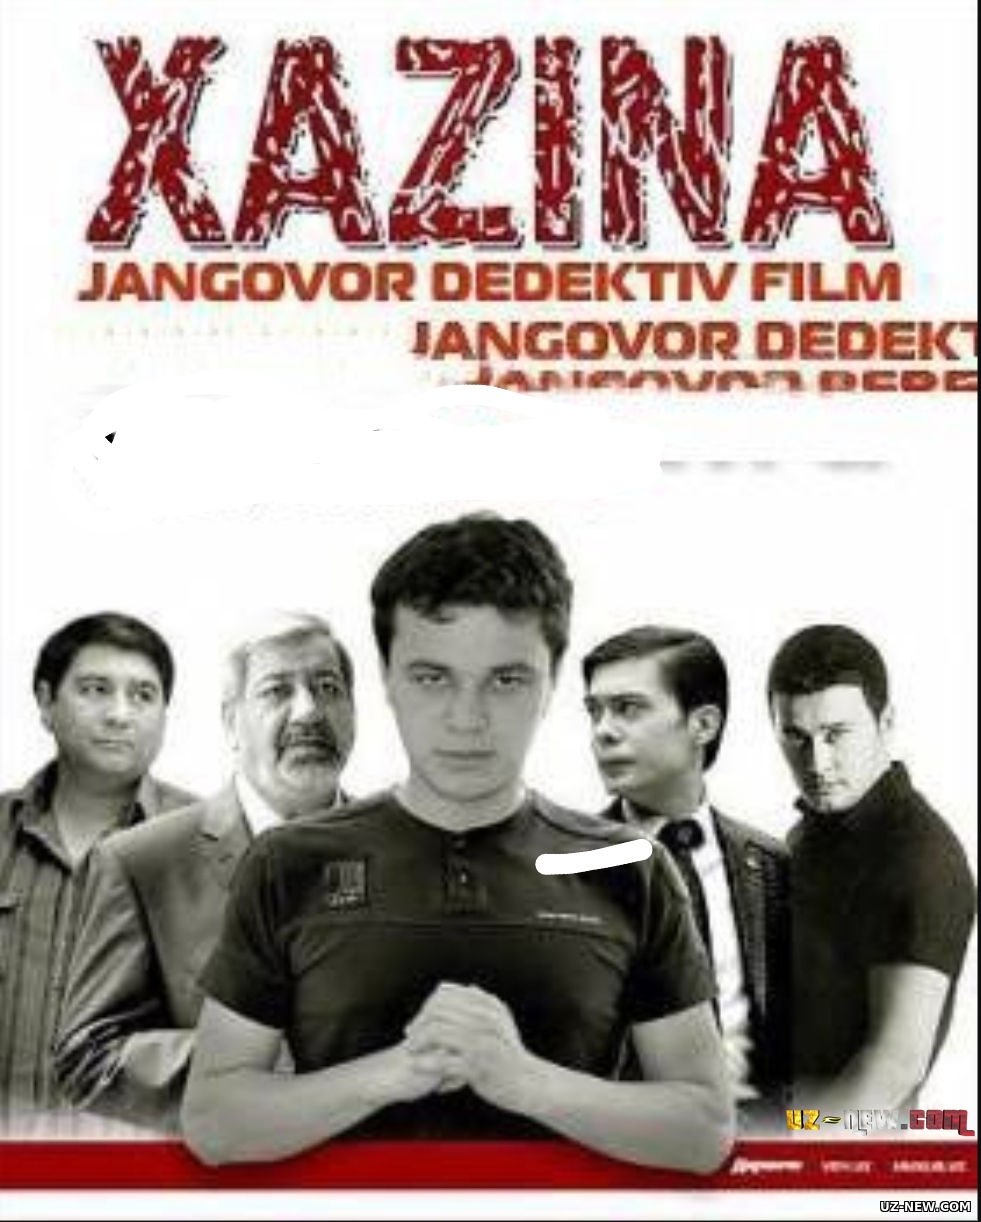 Xazina (o'zbek film) | Хазина (Узбекфильм) #UydaQoling